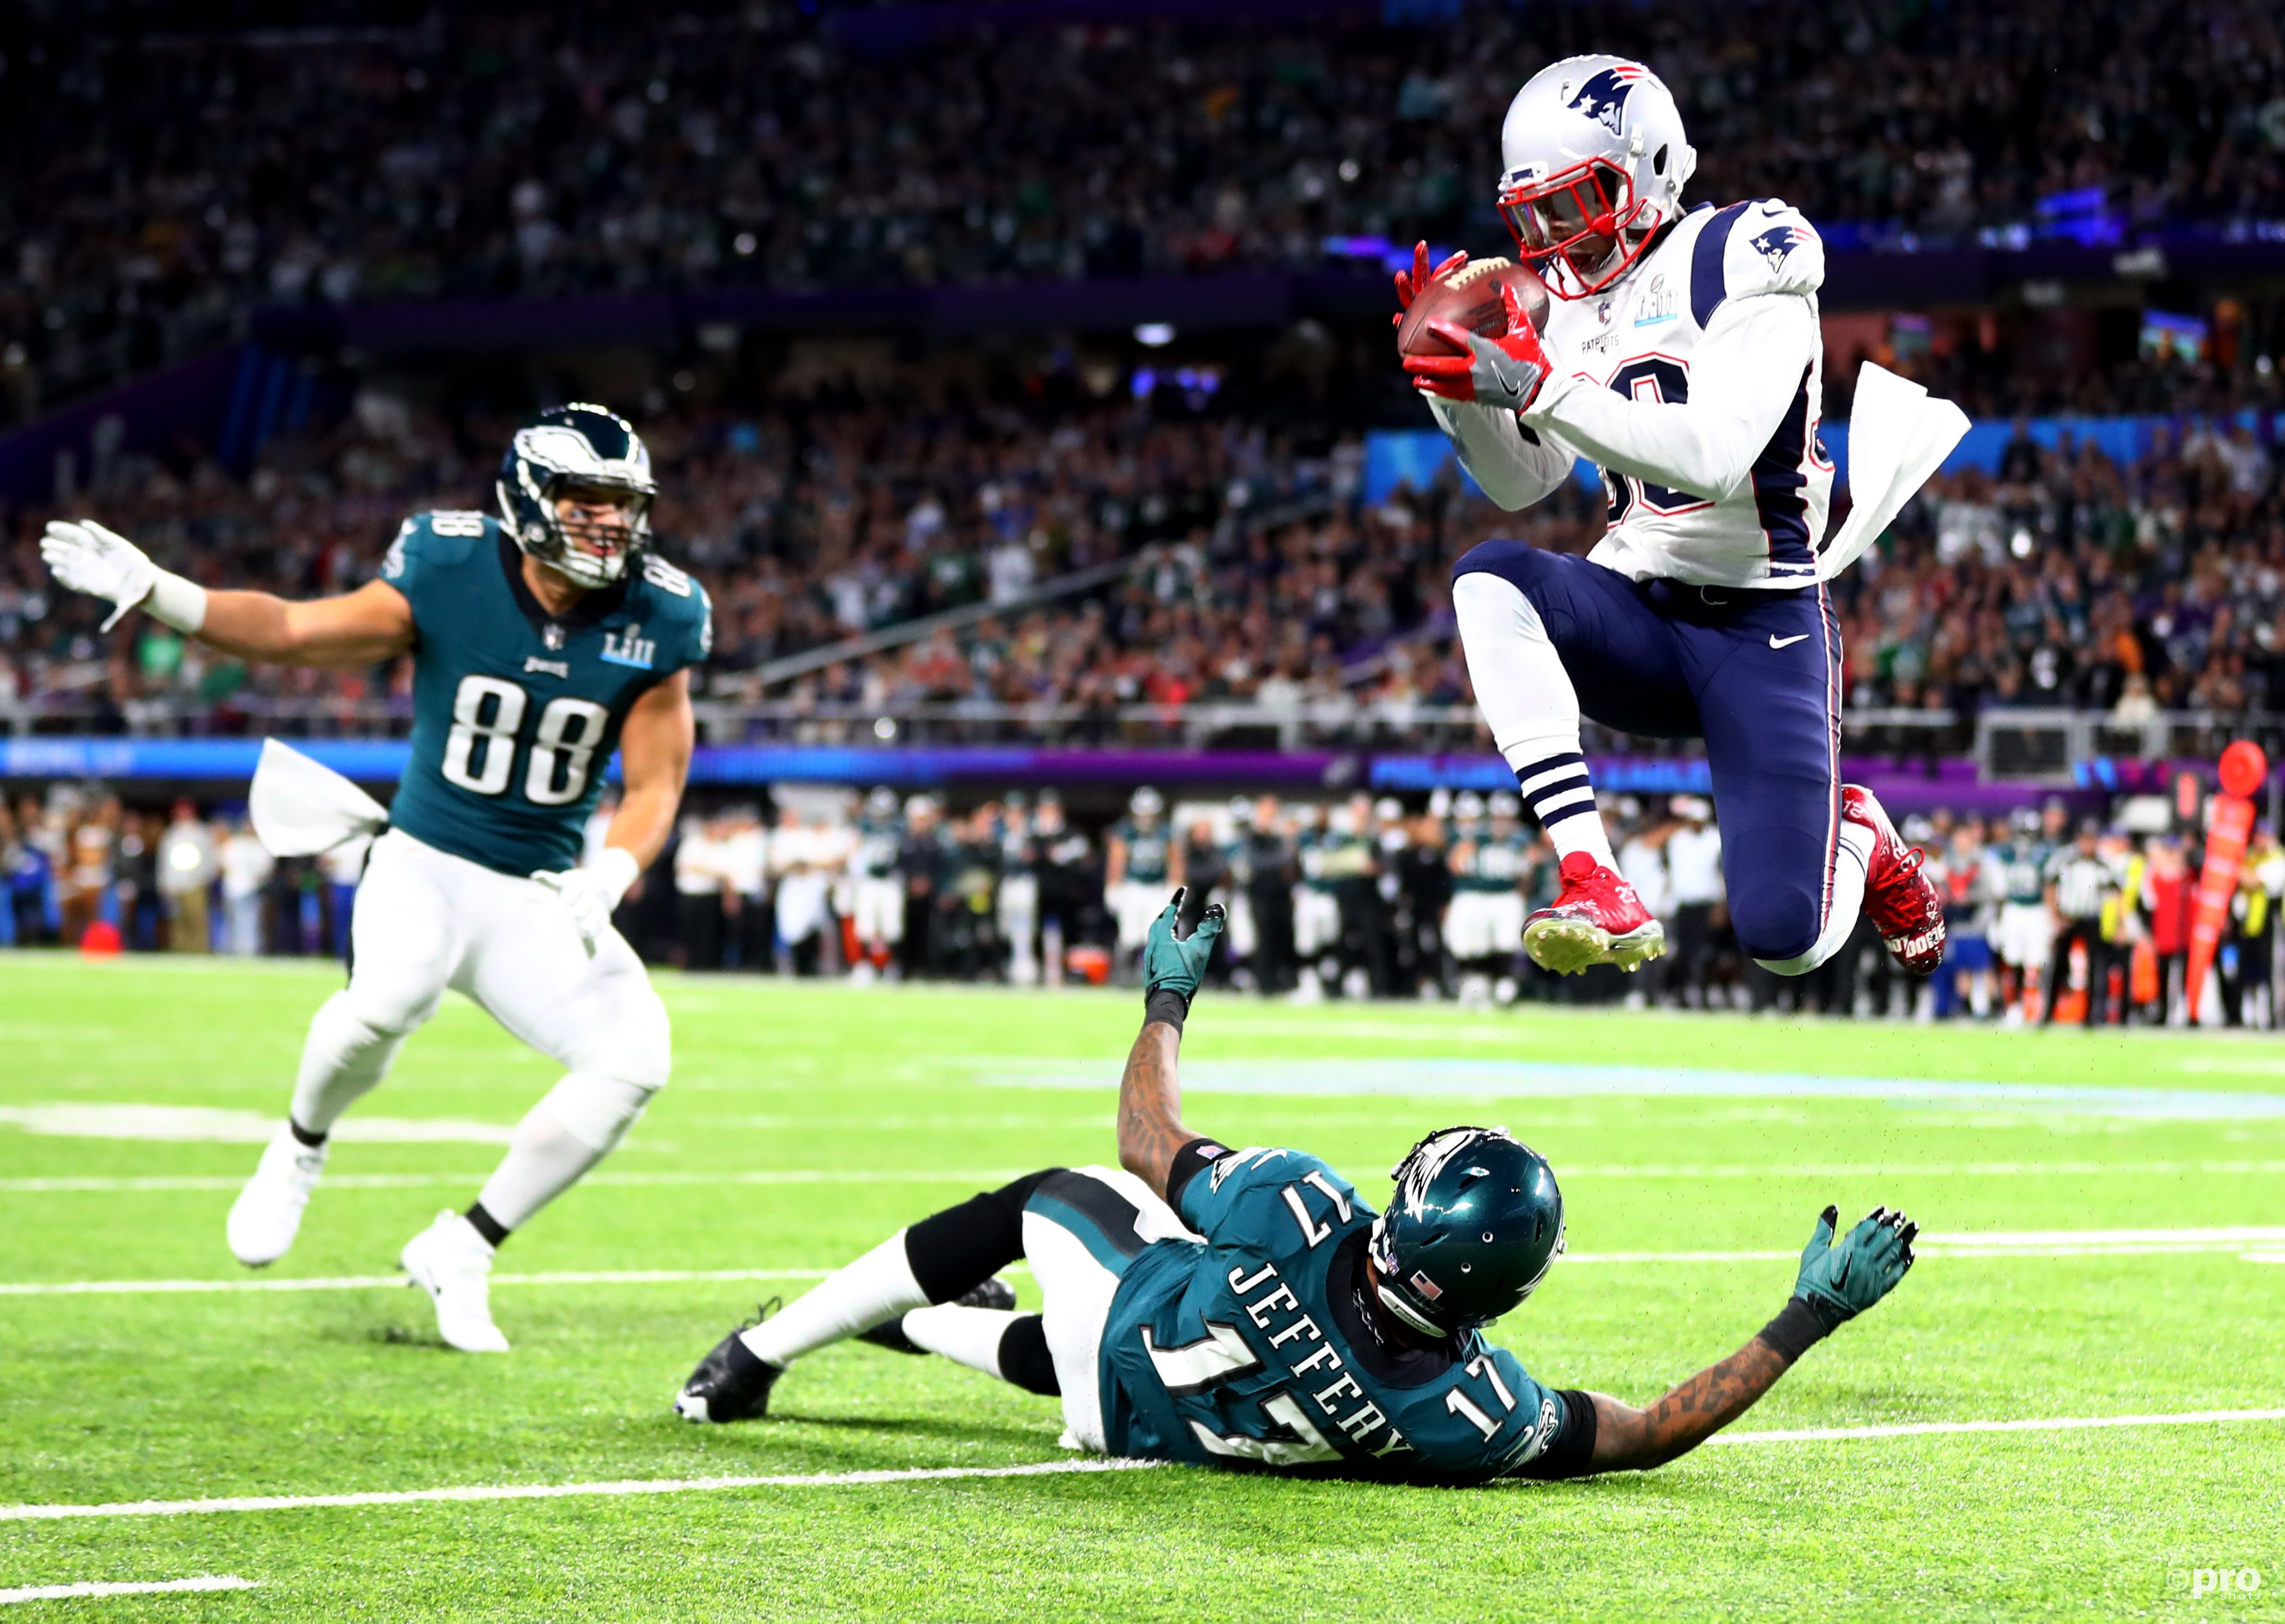 New England Patriots-strong safety Duron Harmon (30) onderschept hier een pass die bedoeld was voor Philadelphia Eagles-wide receiver Alshon Jeffery (17) (Pro Shots / Action Images)